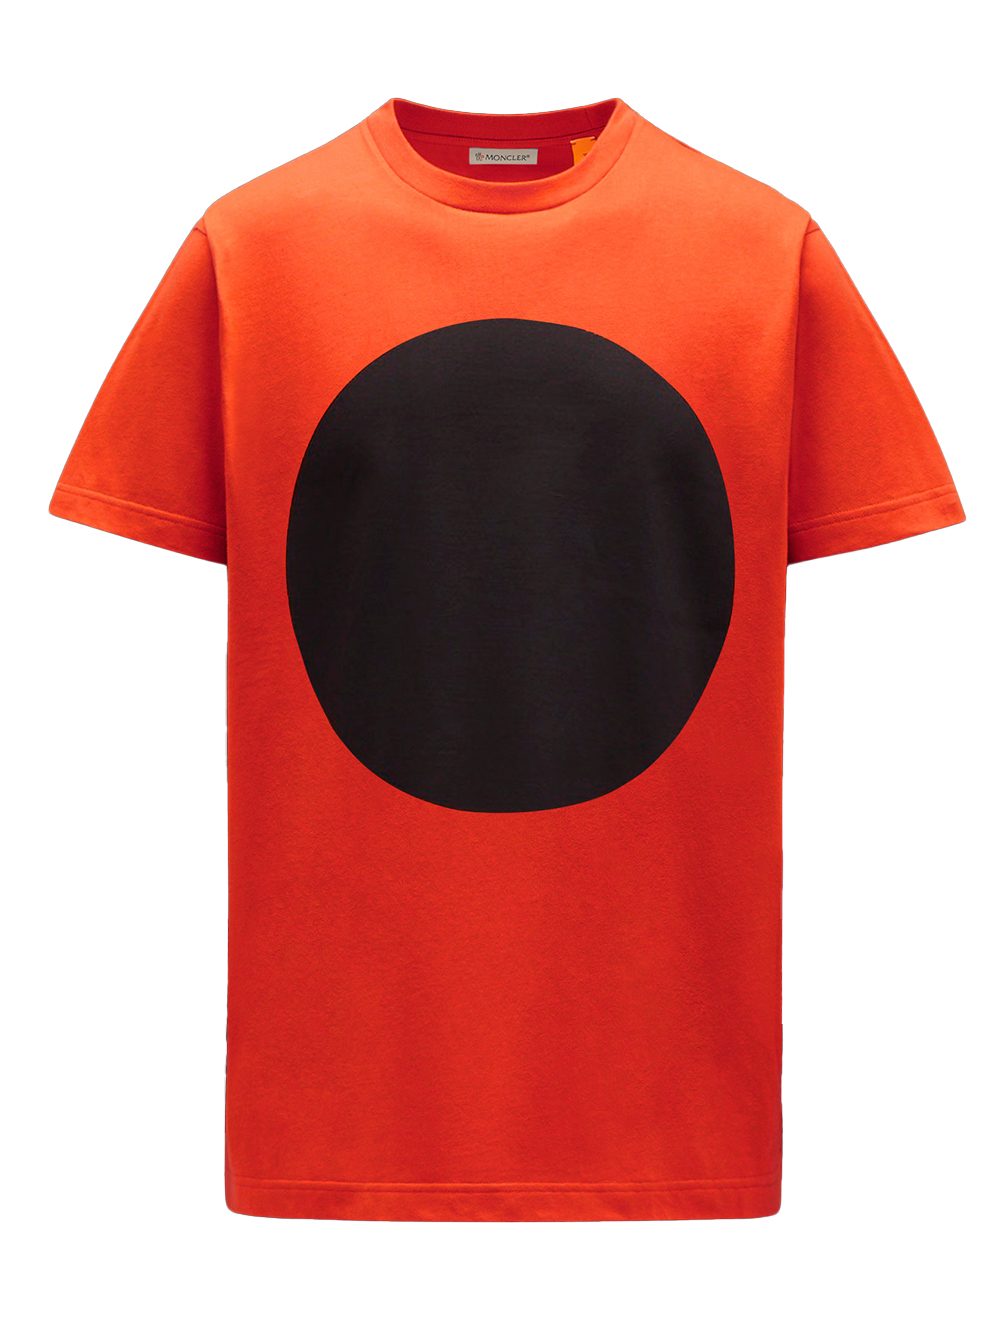 Moncler 5 Craig Green Printed T-Shirt Bright Orange/Black Men's